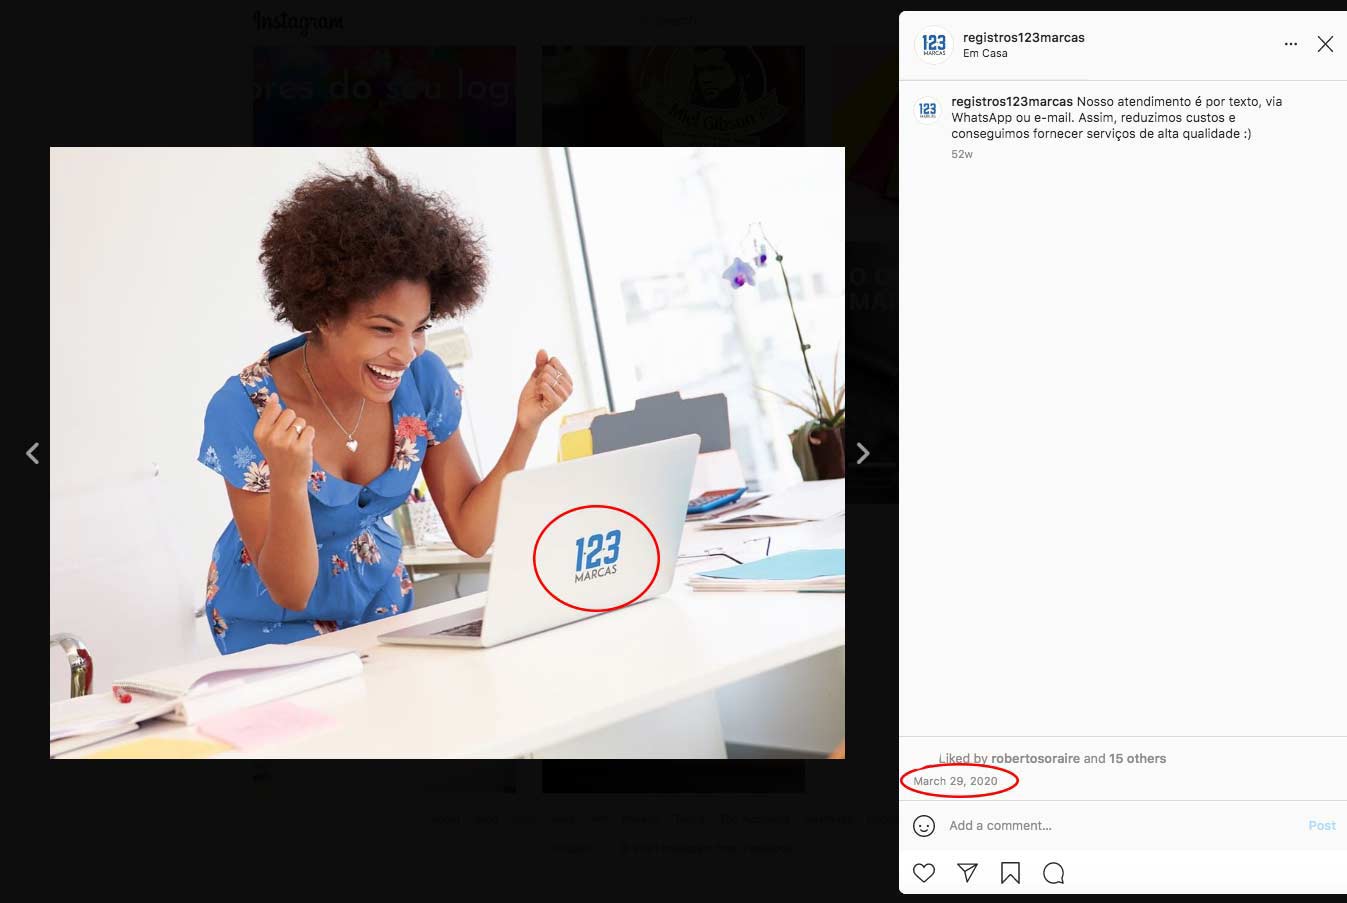 post do instagram como prova de comprovação de uso de marca